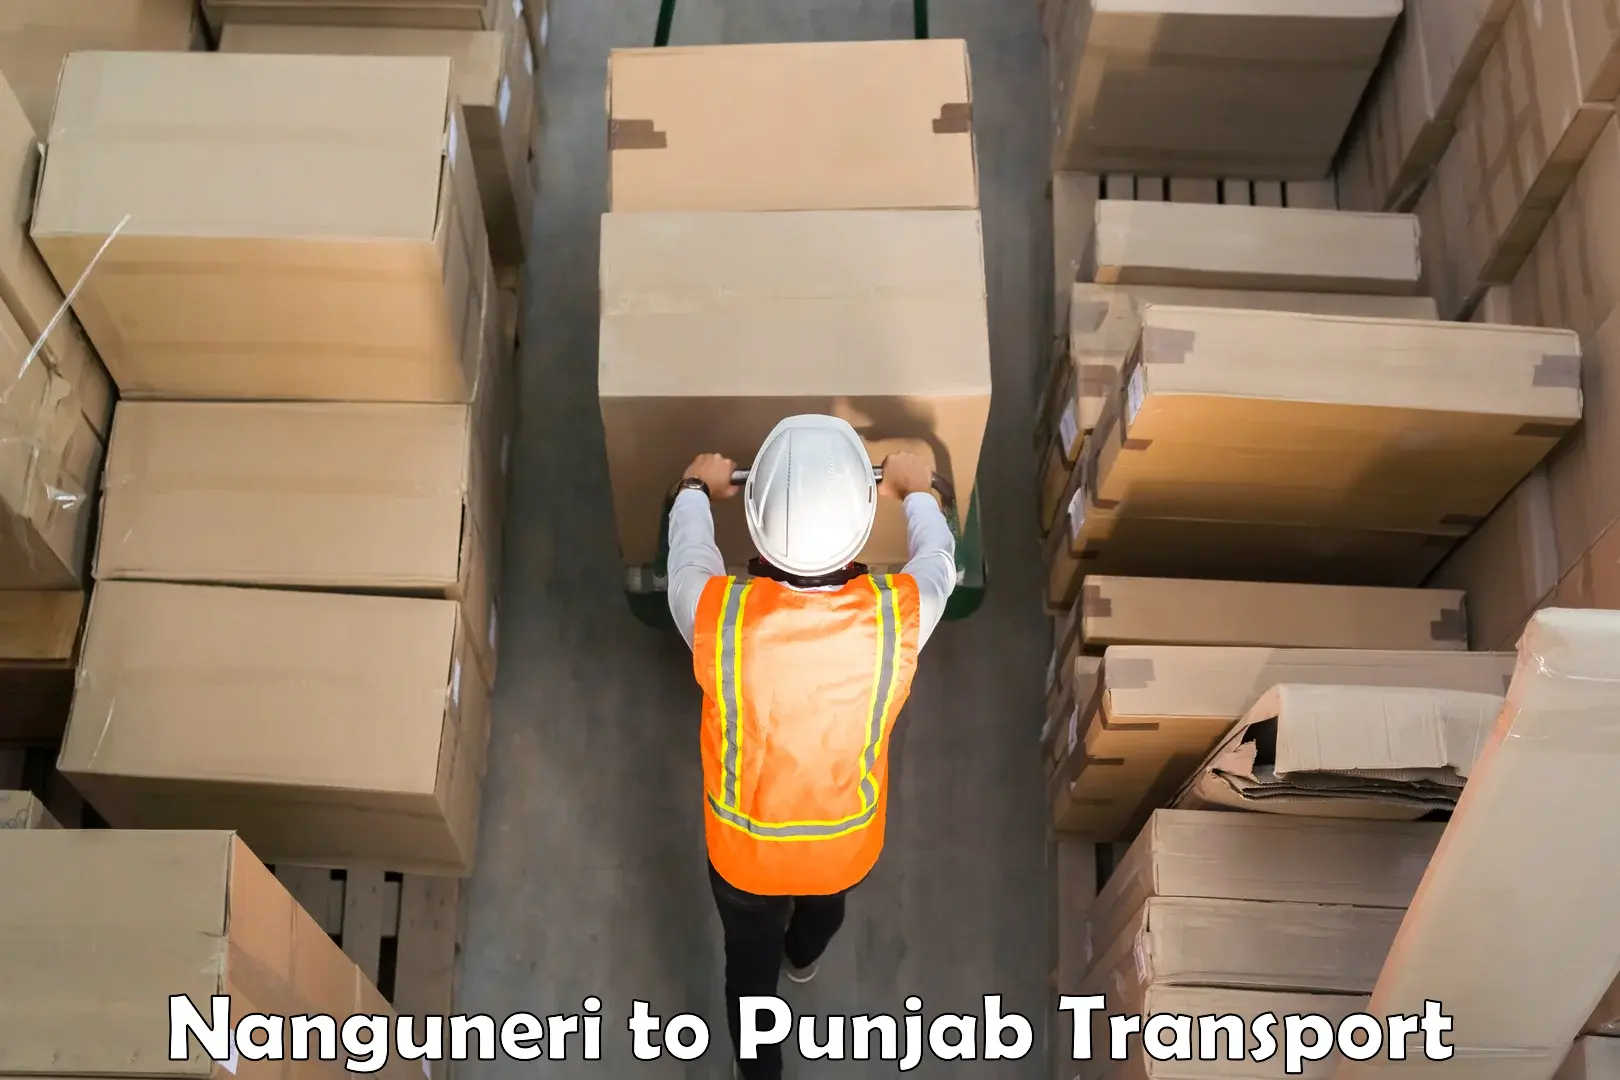 Cargo transport services Nanguneri to Punjab